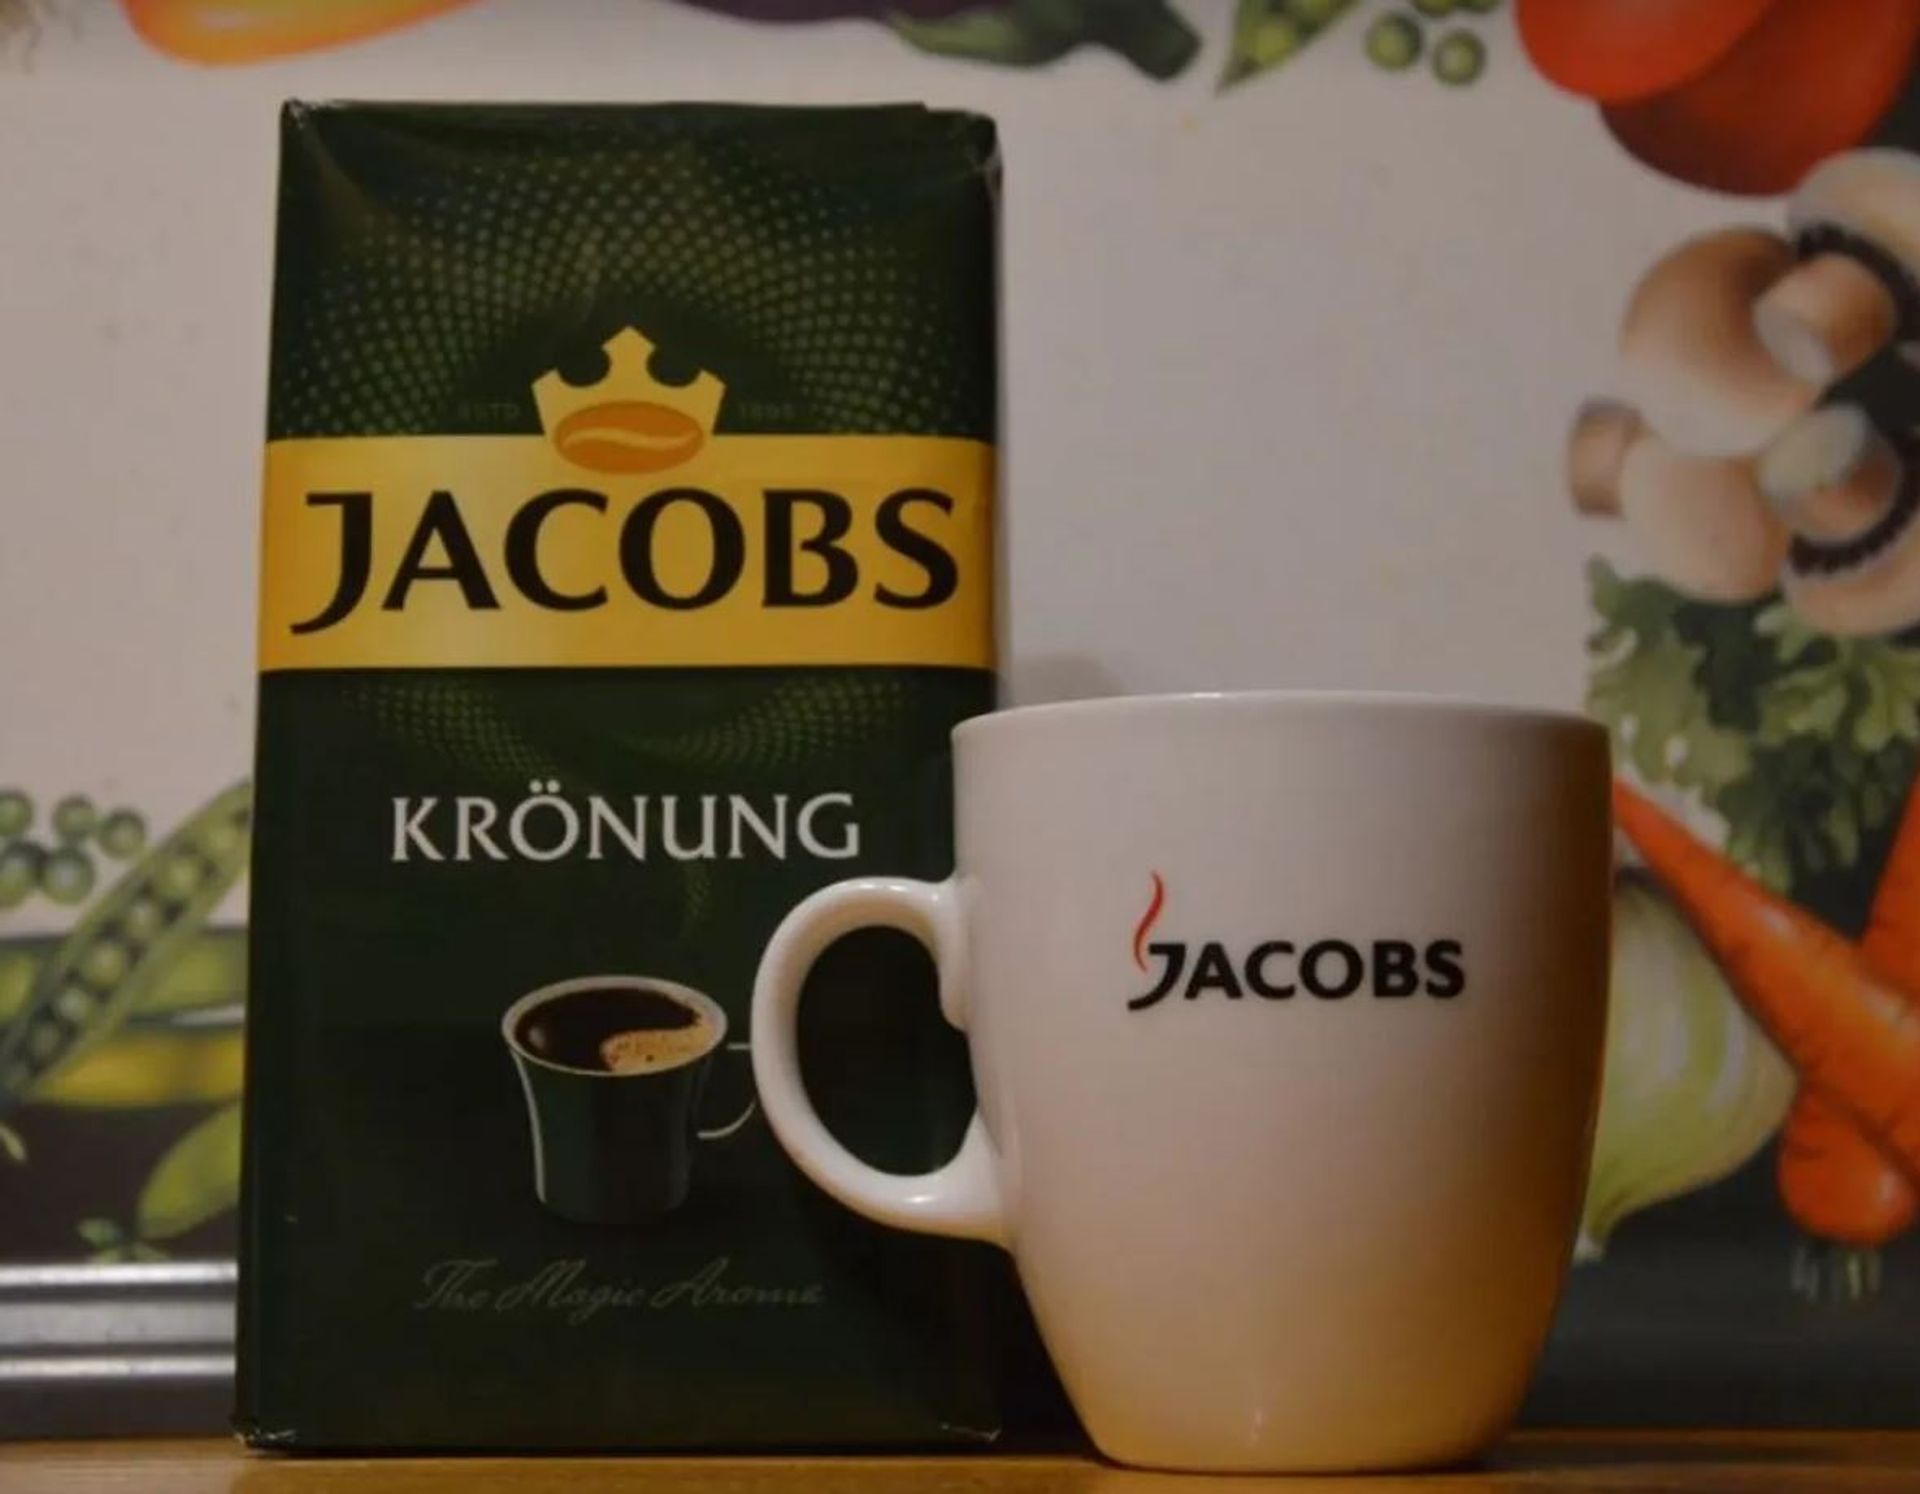 Globalny koncern Jacobs Douwe Egberts za ponad 610 mln zł wybuduje fabrykę kawy na Dolnym Śląsku